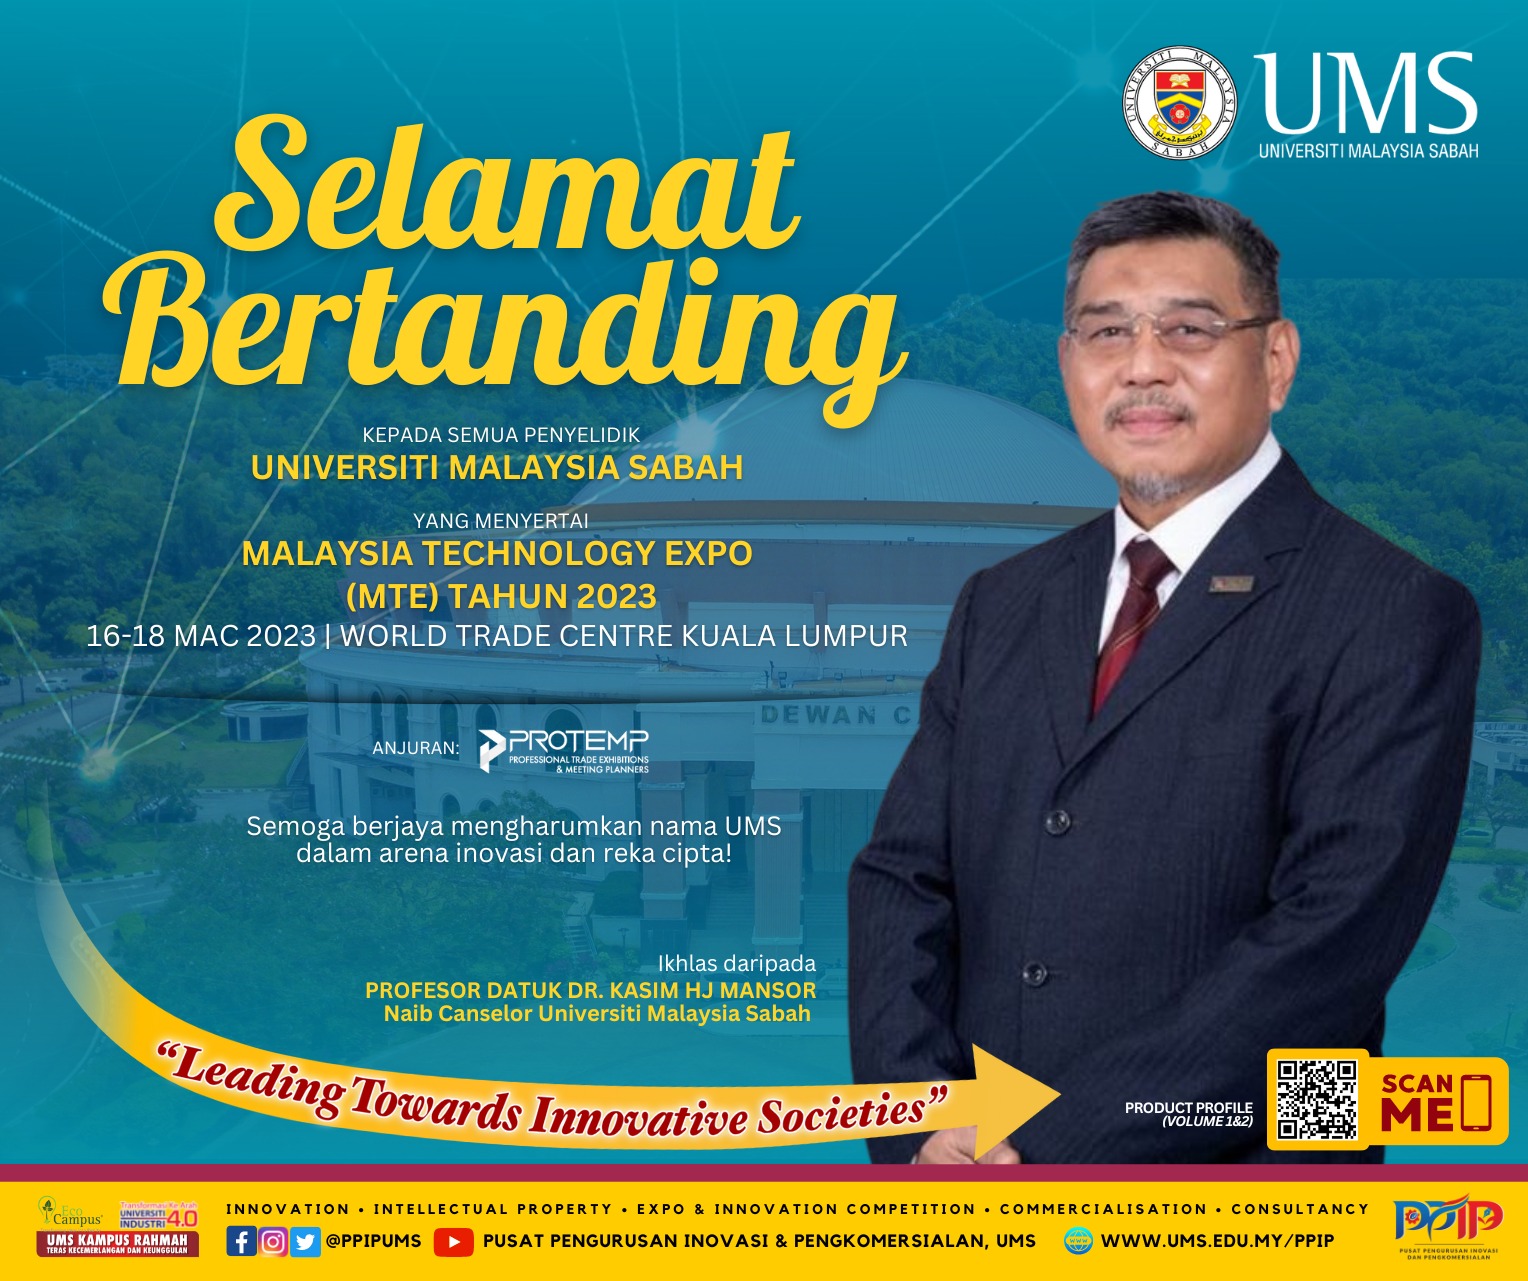 Selamat bertanding kepada semua penyelidik UMS yang menyertai Malaysia Technology Expo (MTE) Tahun 2023